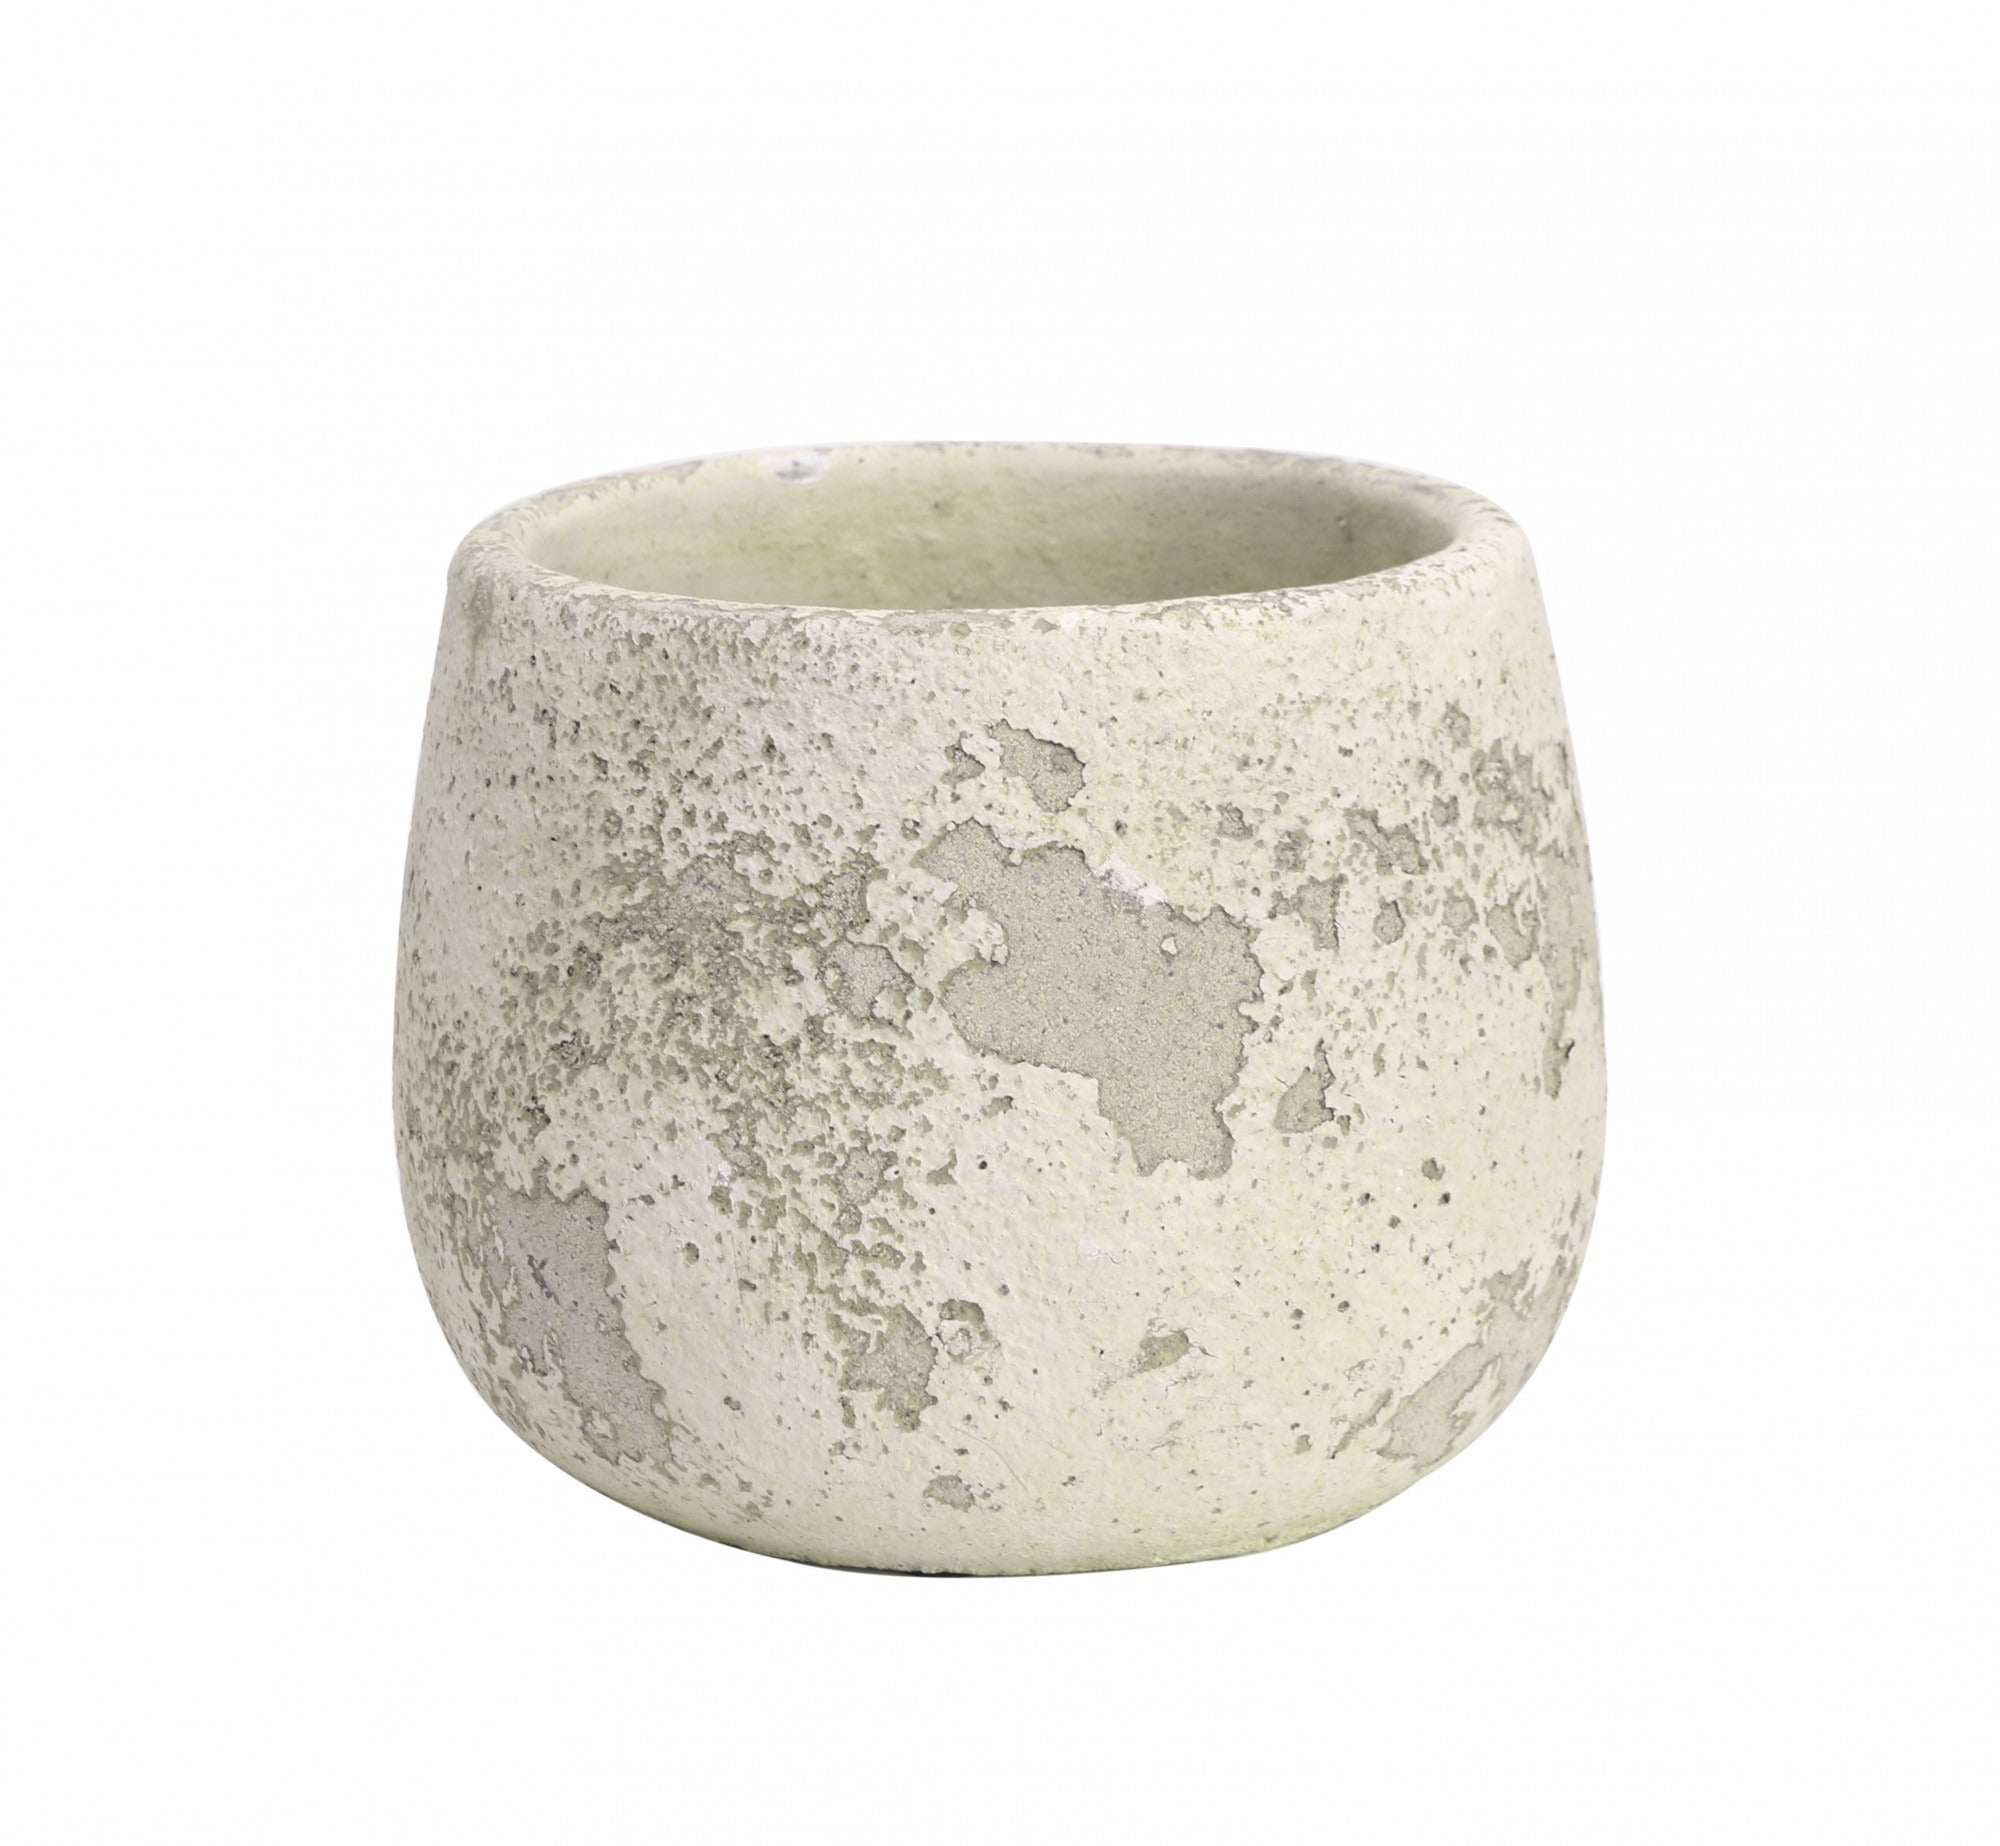 View Rustic Bowl Cement Flower Pot 12cm information